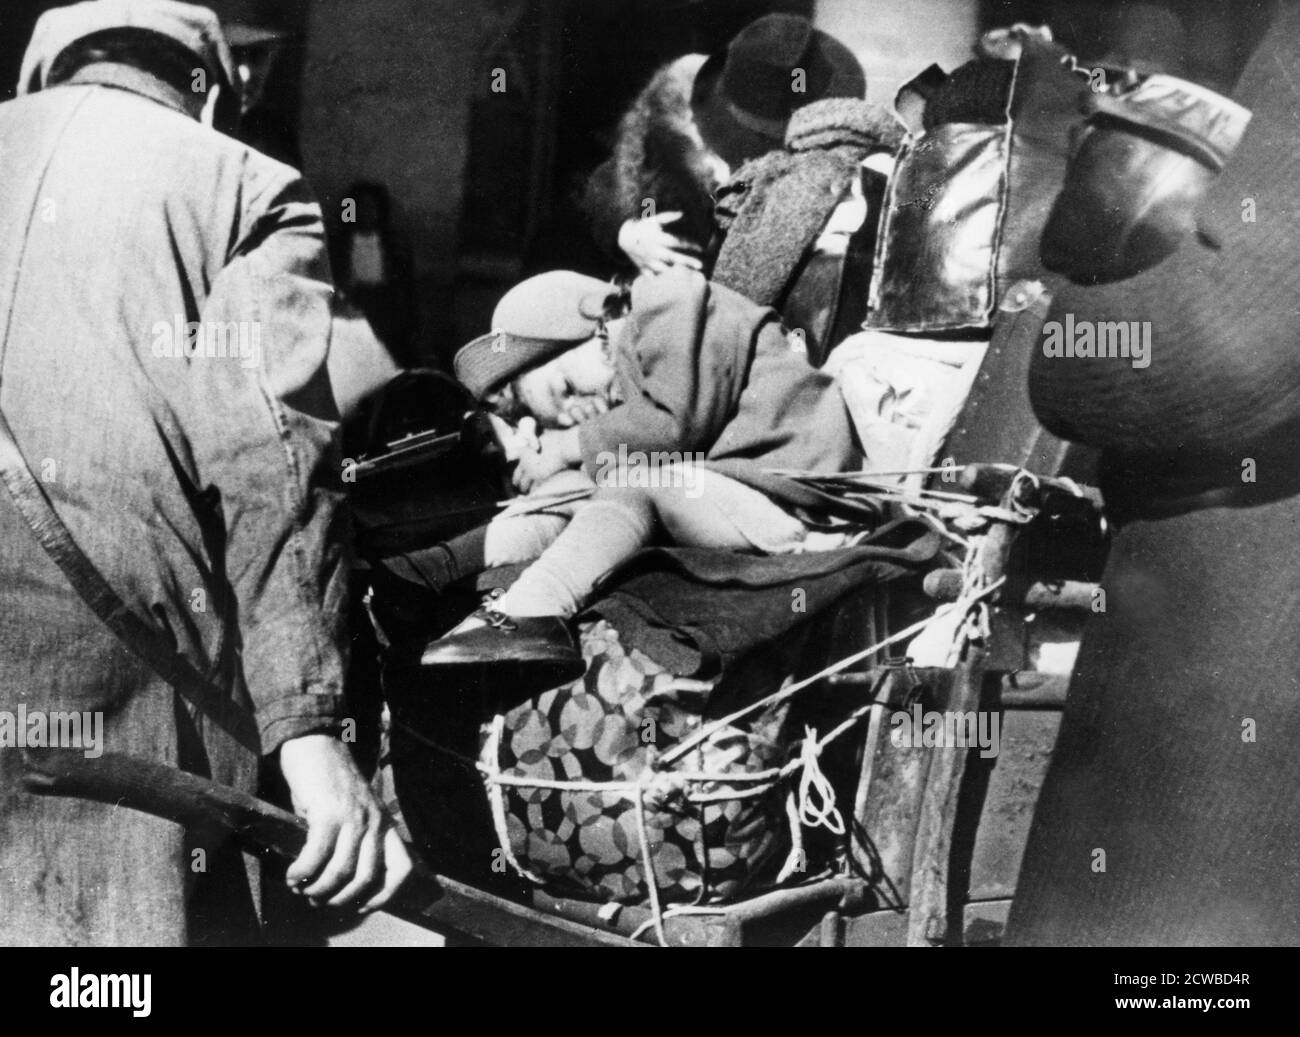 Flüchtlinge mit Gepäck im Gare de l'Est, Paris, August 1940. Menschen, die vor den deutschen Invasoren geflohen waren und sich darauf vorbereiteten, nach der Niederlage Frankreichs in ihre Häuser zurückzukehren. Der Fotograf ist unbekannt. Stockfoto